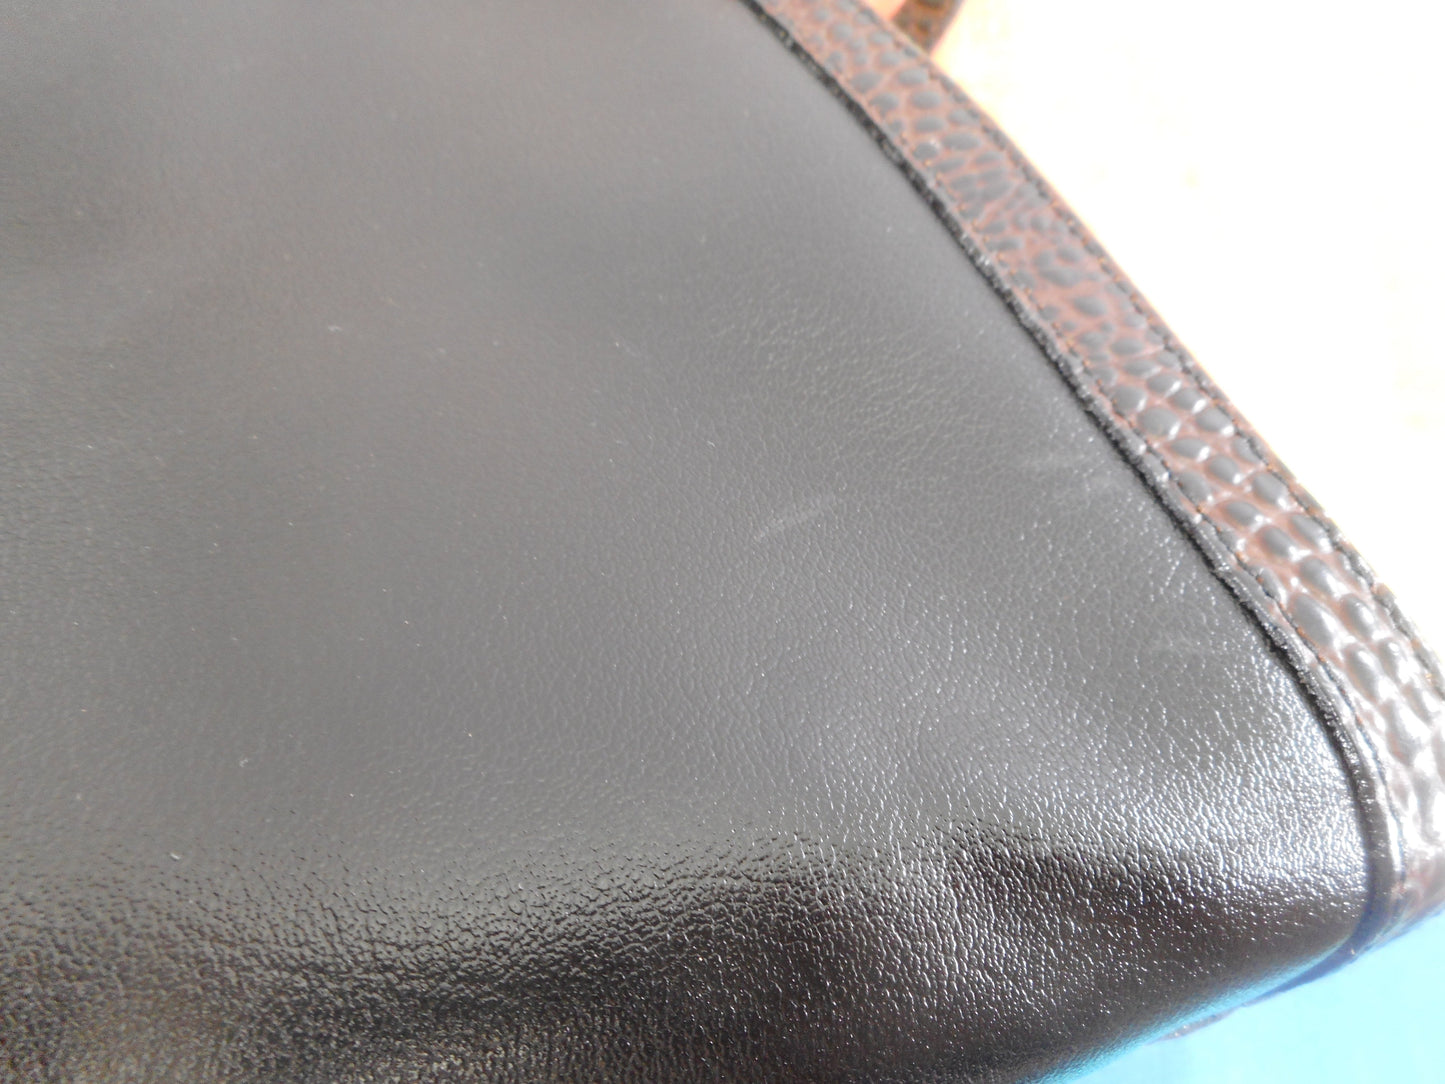 Brahmin Alligator Black Leather Satchel Handbag Shoulder Bag - Used Once EUC mild mark